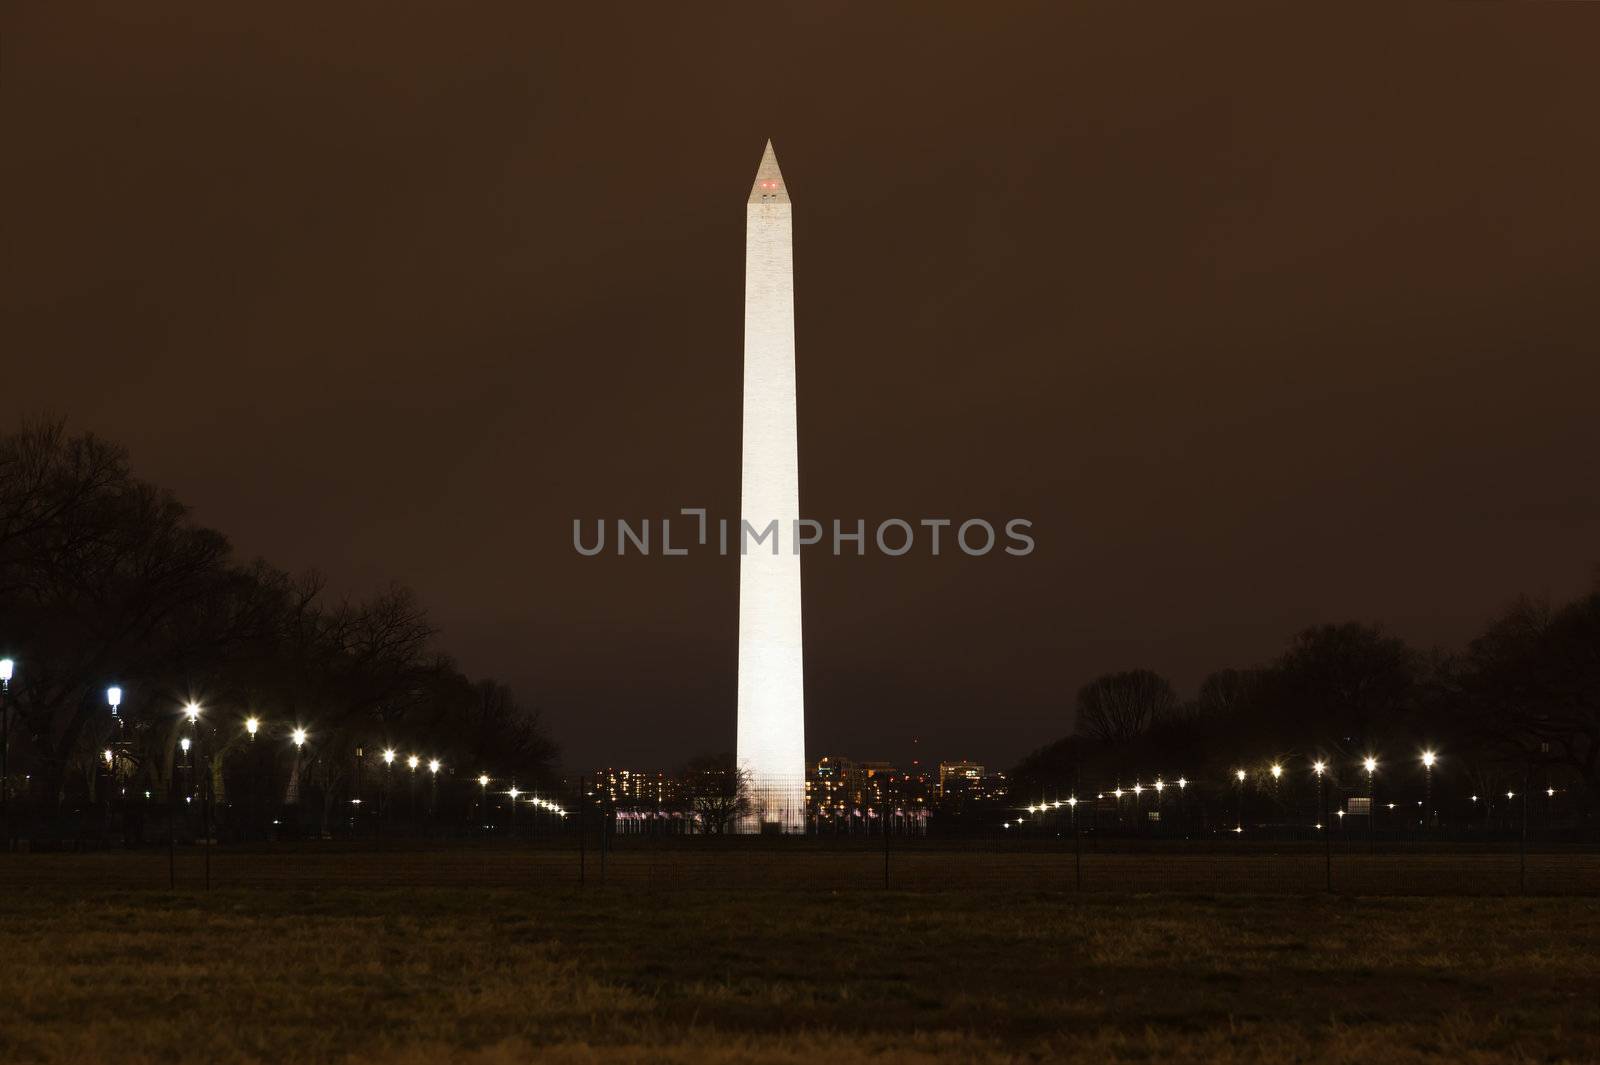 Washington Memorial at Night by gary718